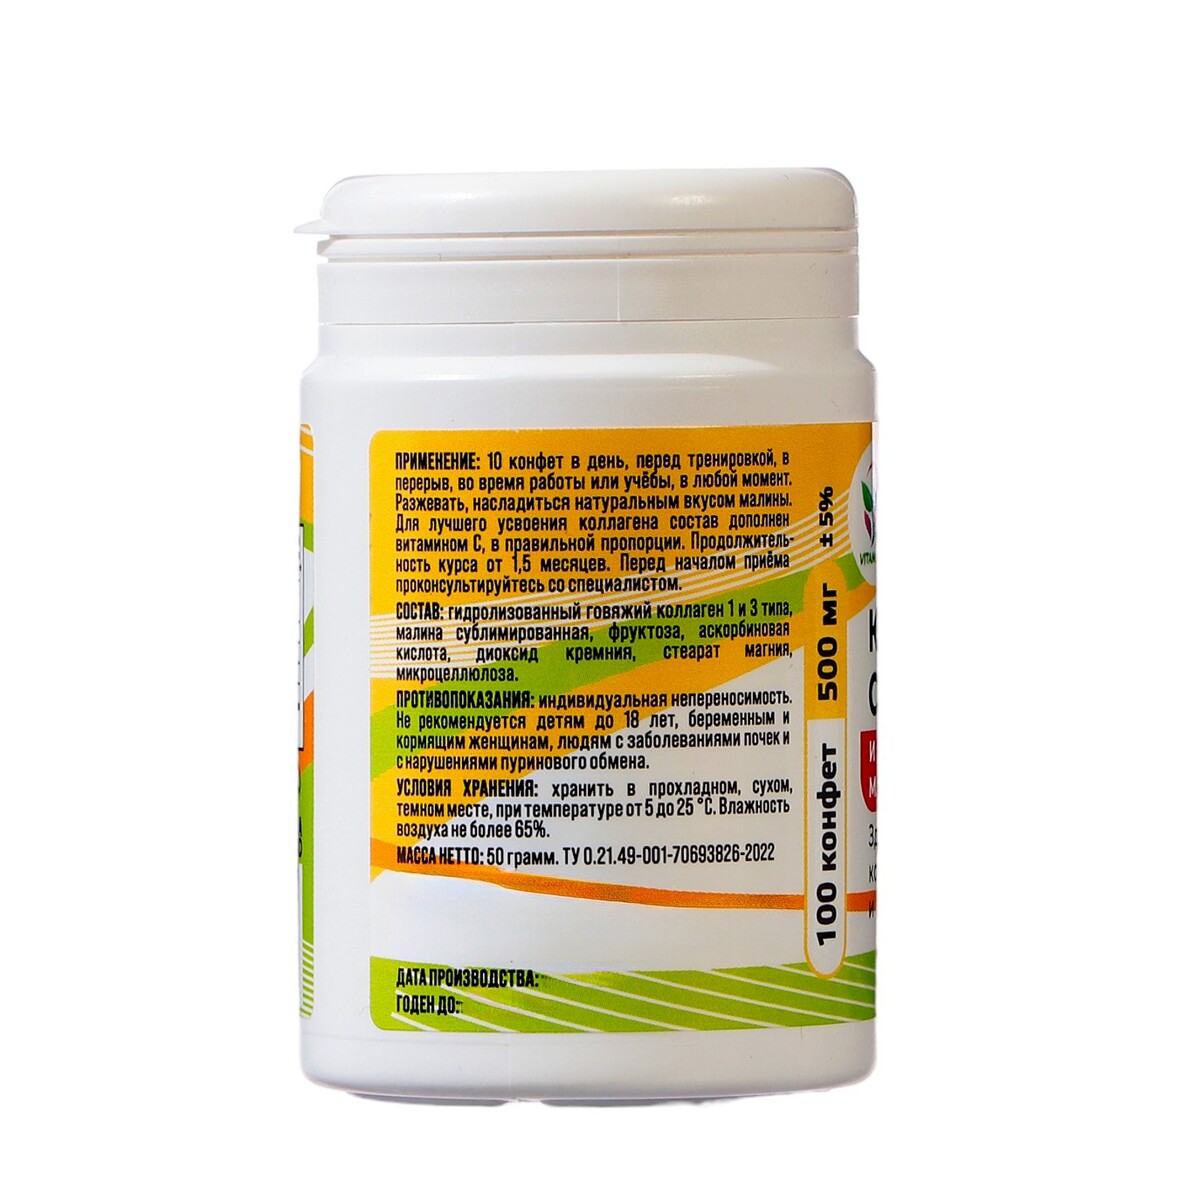 Коллаген жевательный vitamuno с натуральной малиной, 100 таблеток по 500 мг Vitamuno 08129610 - фото 2